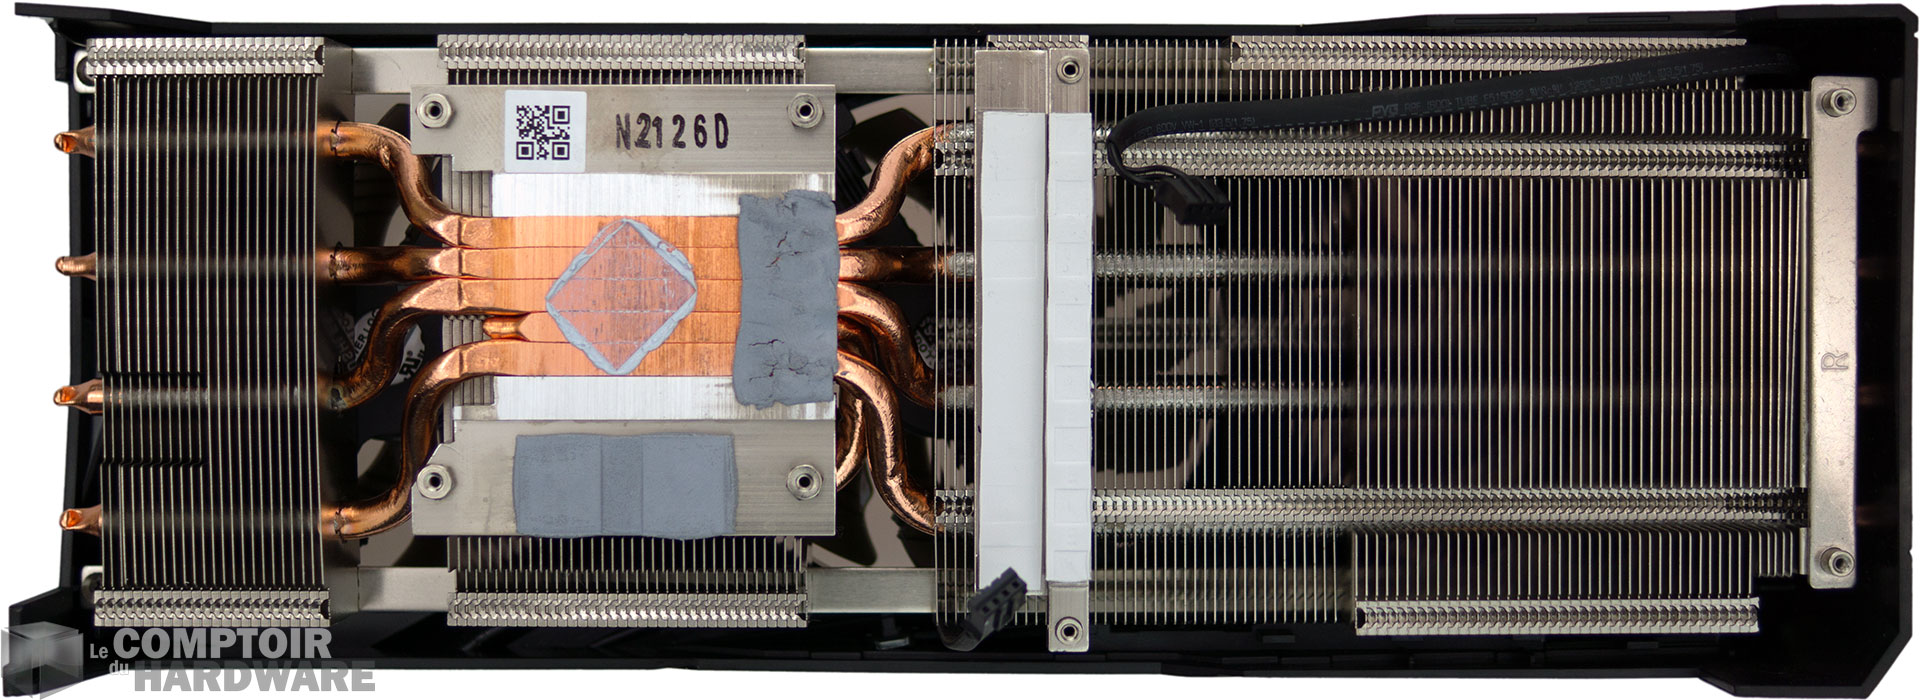 Le radiateur de la Gigabyte RX 6600 XT Gaming OC Pro